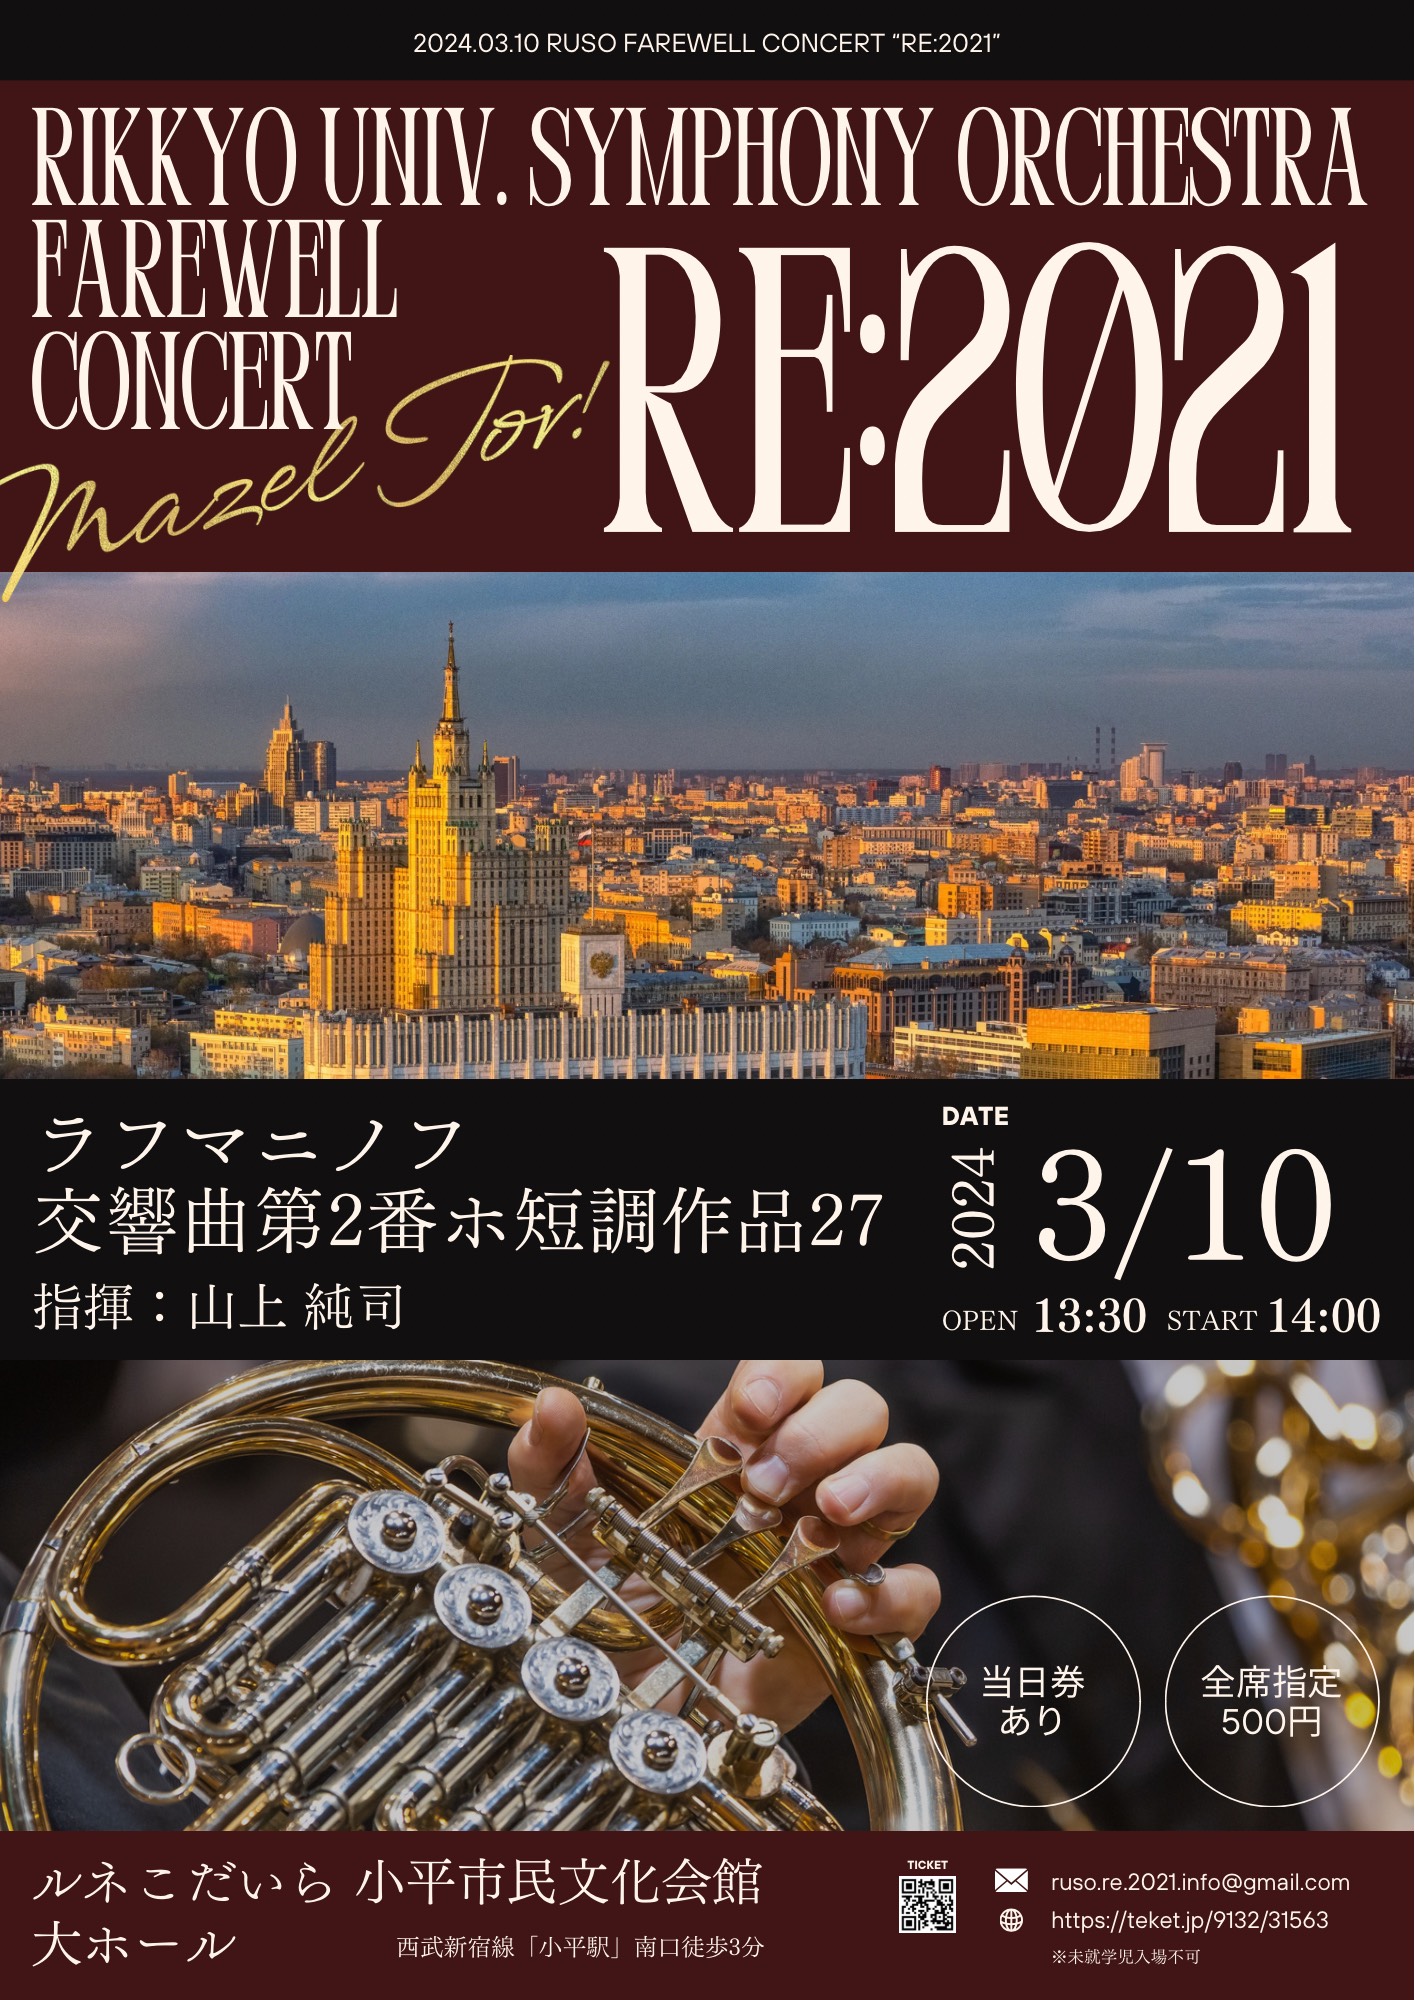 立教大学交響楽団 卒業記念演奏会「RE:2021」立教大学交響楽団 卒業記念演奏会「RE:2021」のフライヤー画像